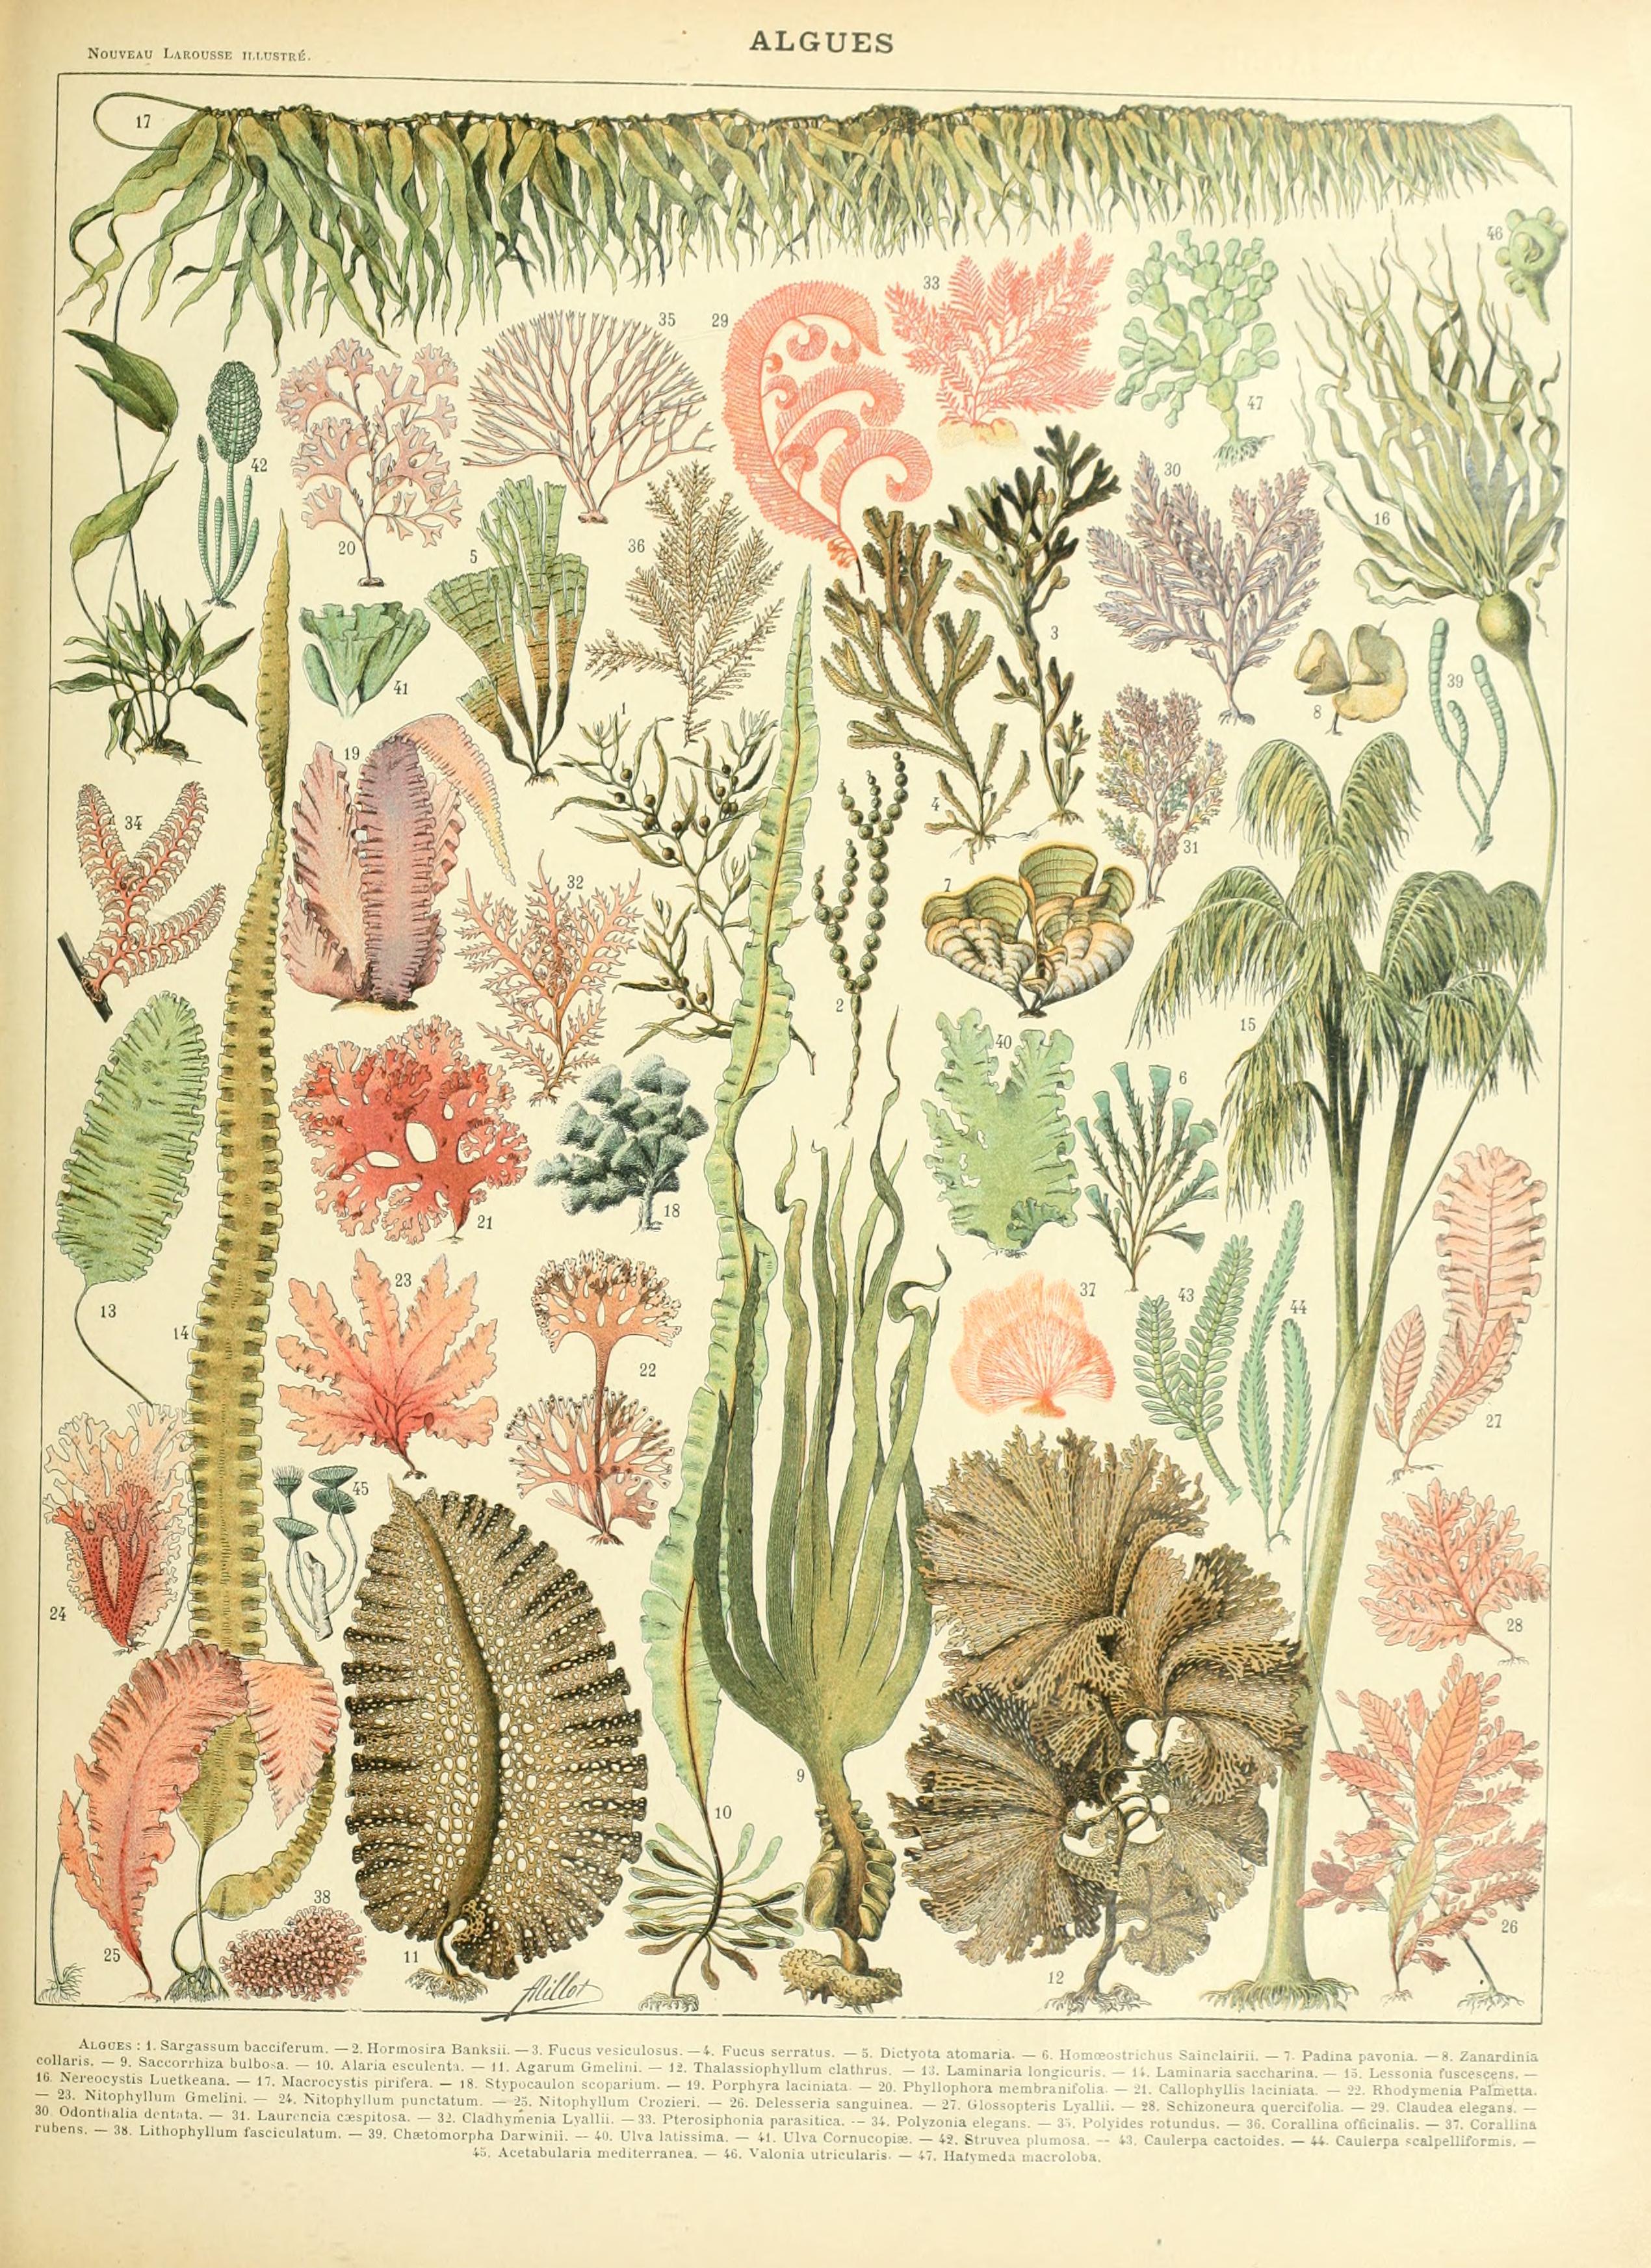 De las láminas botánicas a las láminas modernas – creciendo entre